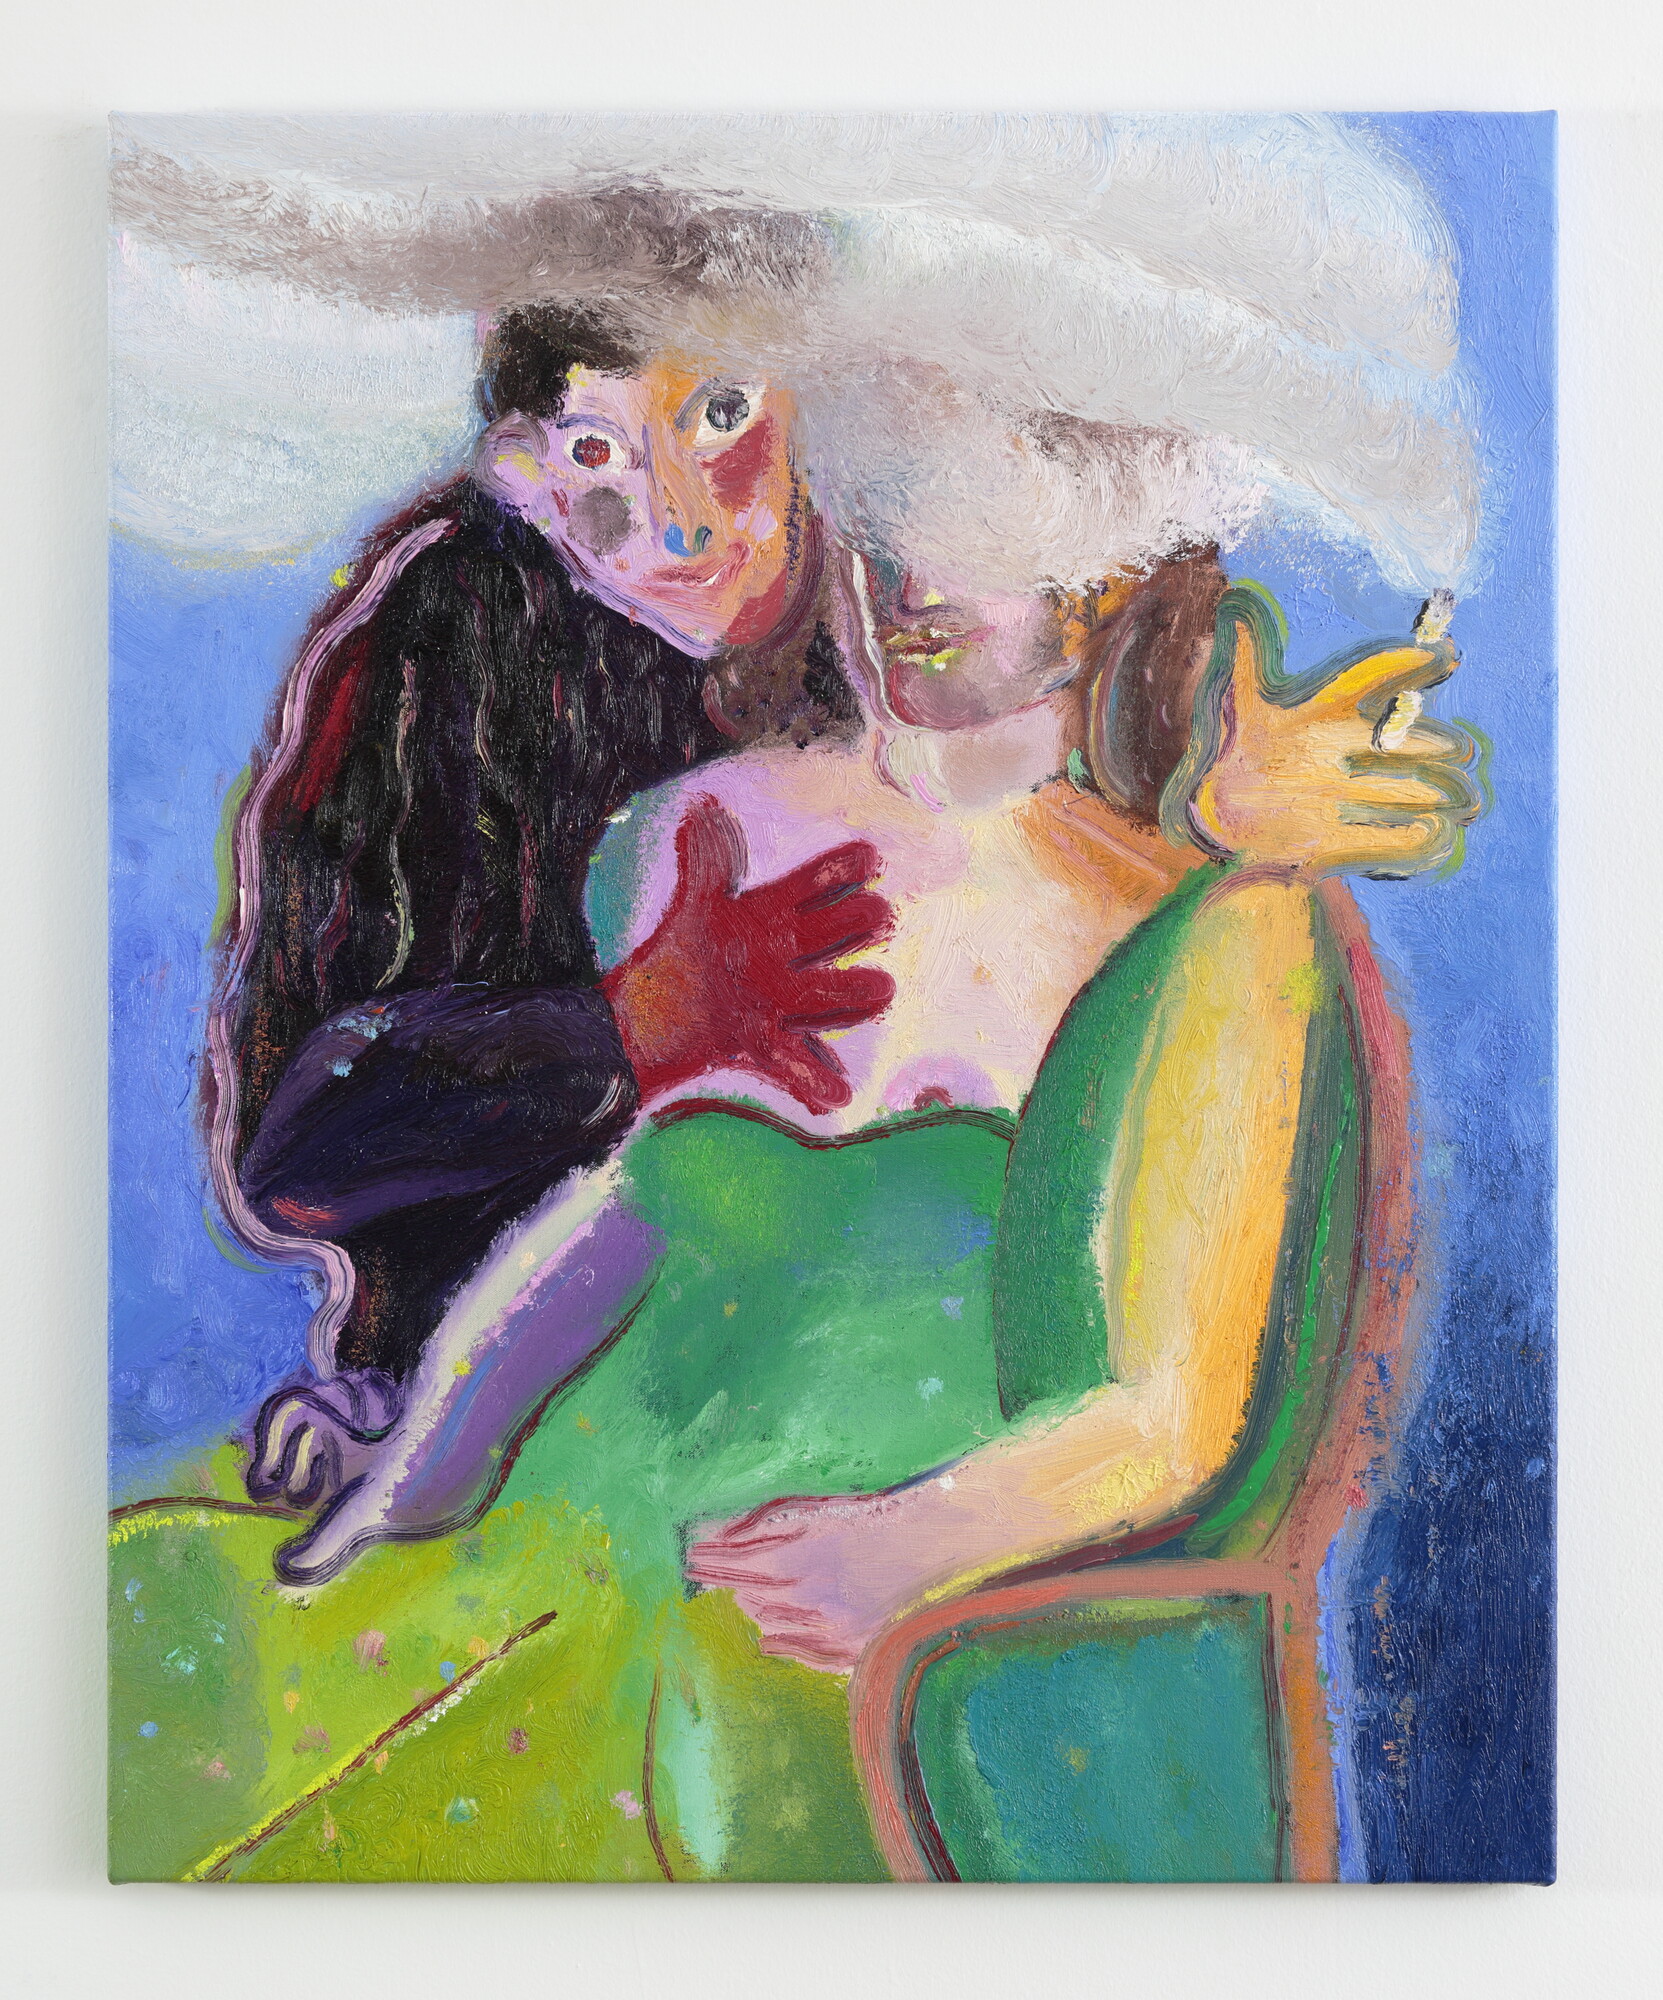 Rhys Lee, <em>Happy Couple on a Windy Day</em> (2021). Oil on canvas, 93 x 77 cm. Courtesy of Nicholas Thompson Gallery. Photo: Tim Gresham